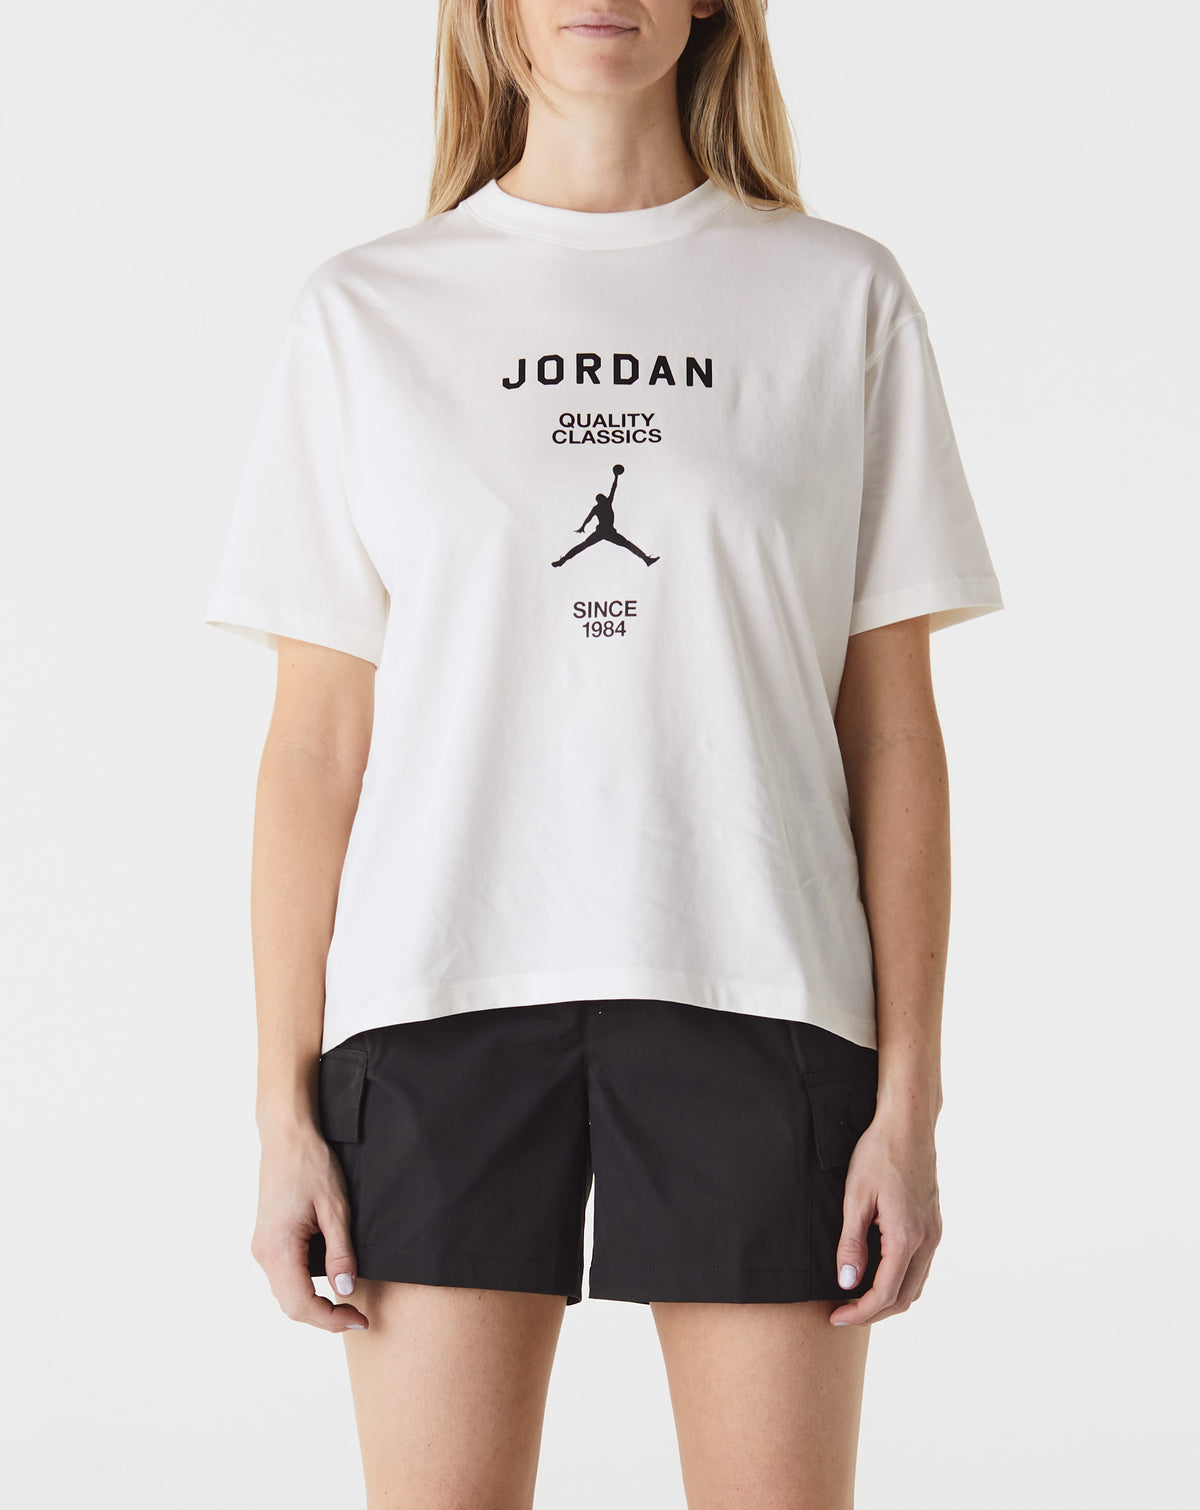 Air Jordan Women's Jordan Quality Classics T-Shirt - Rule of Next Apparel